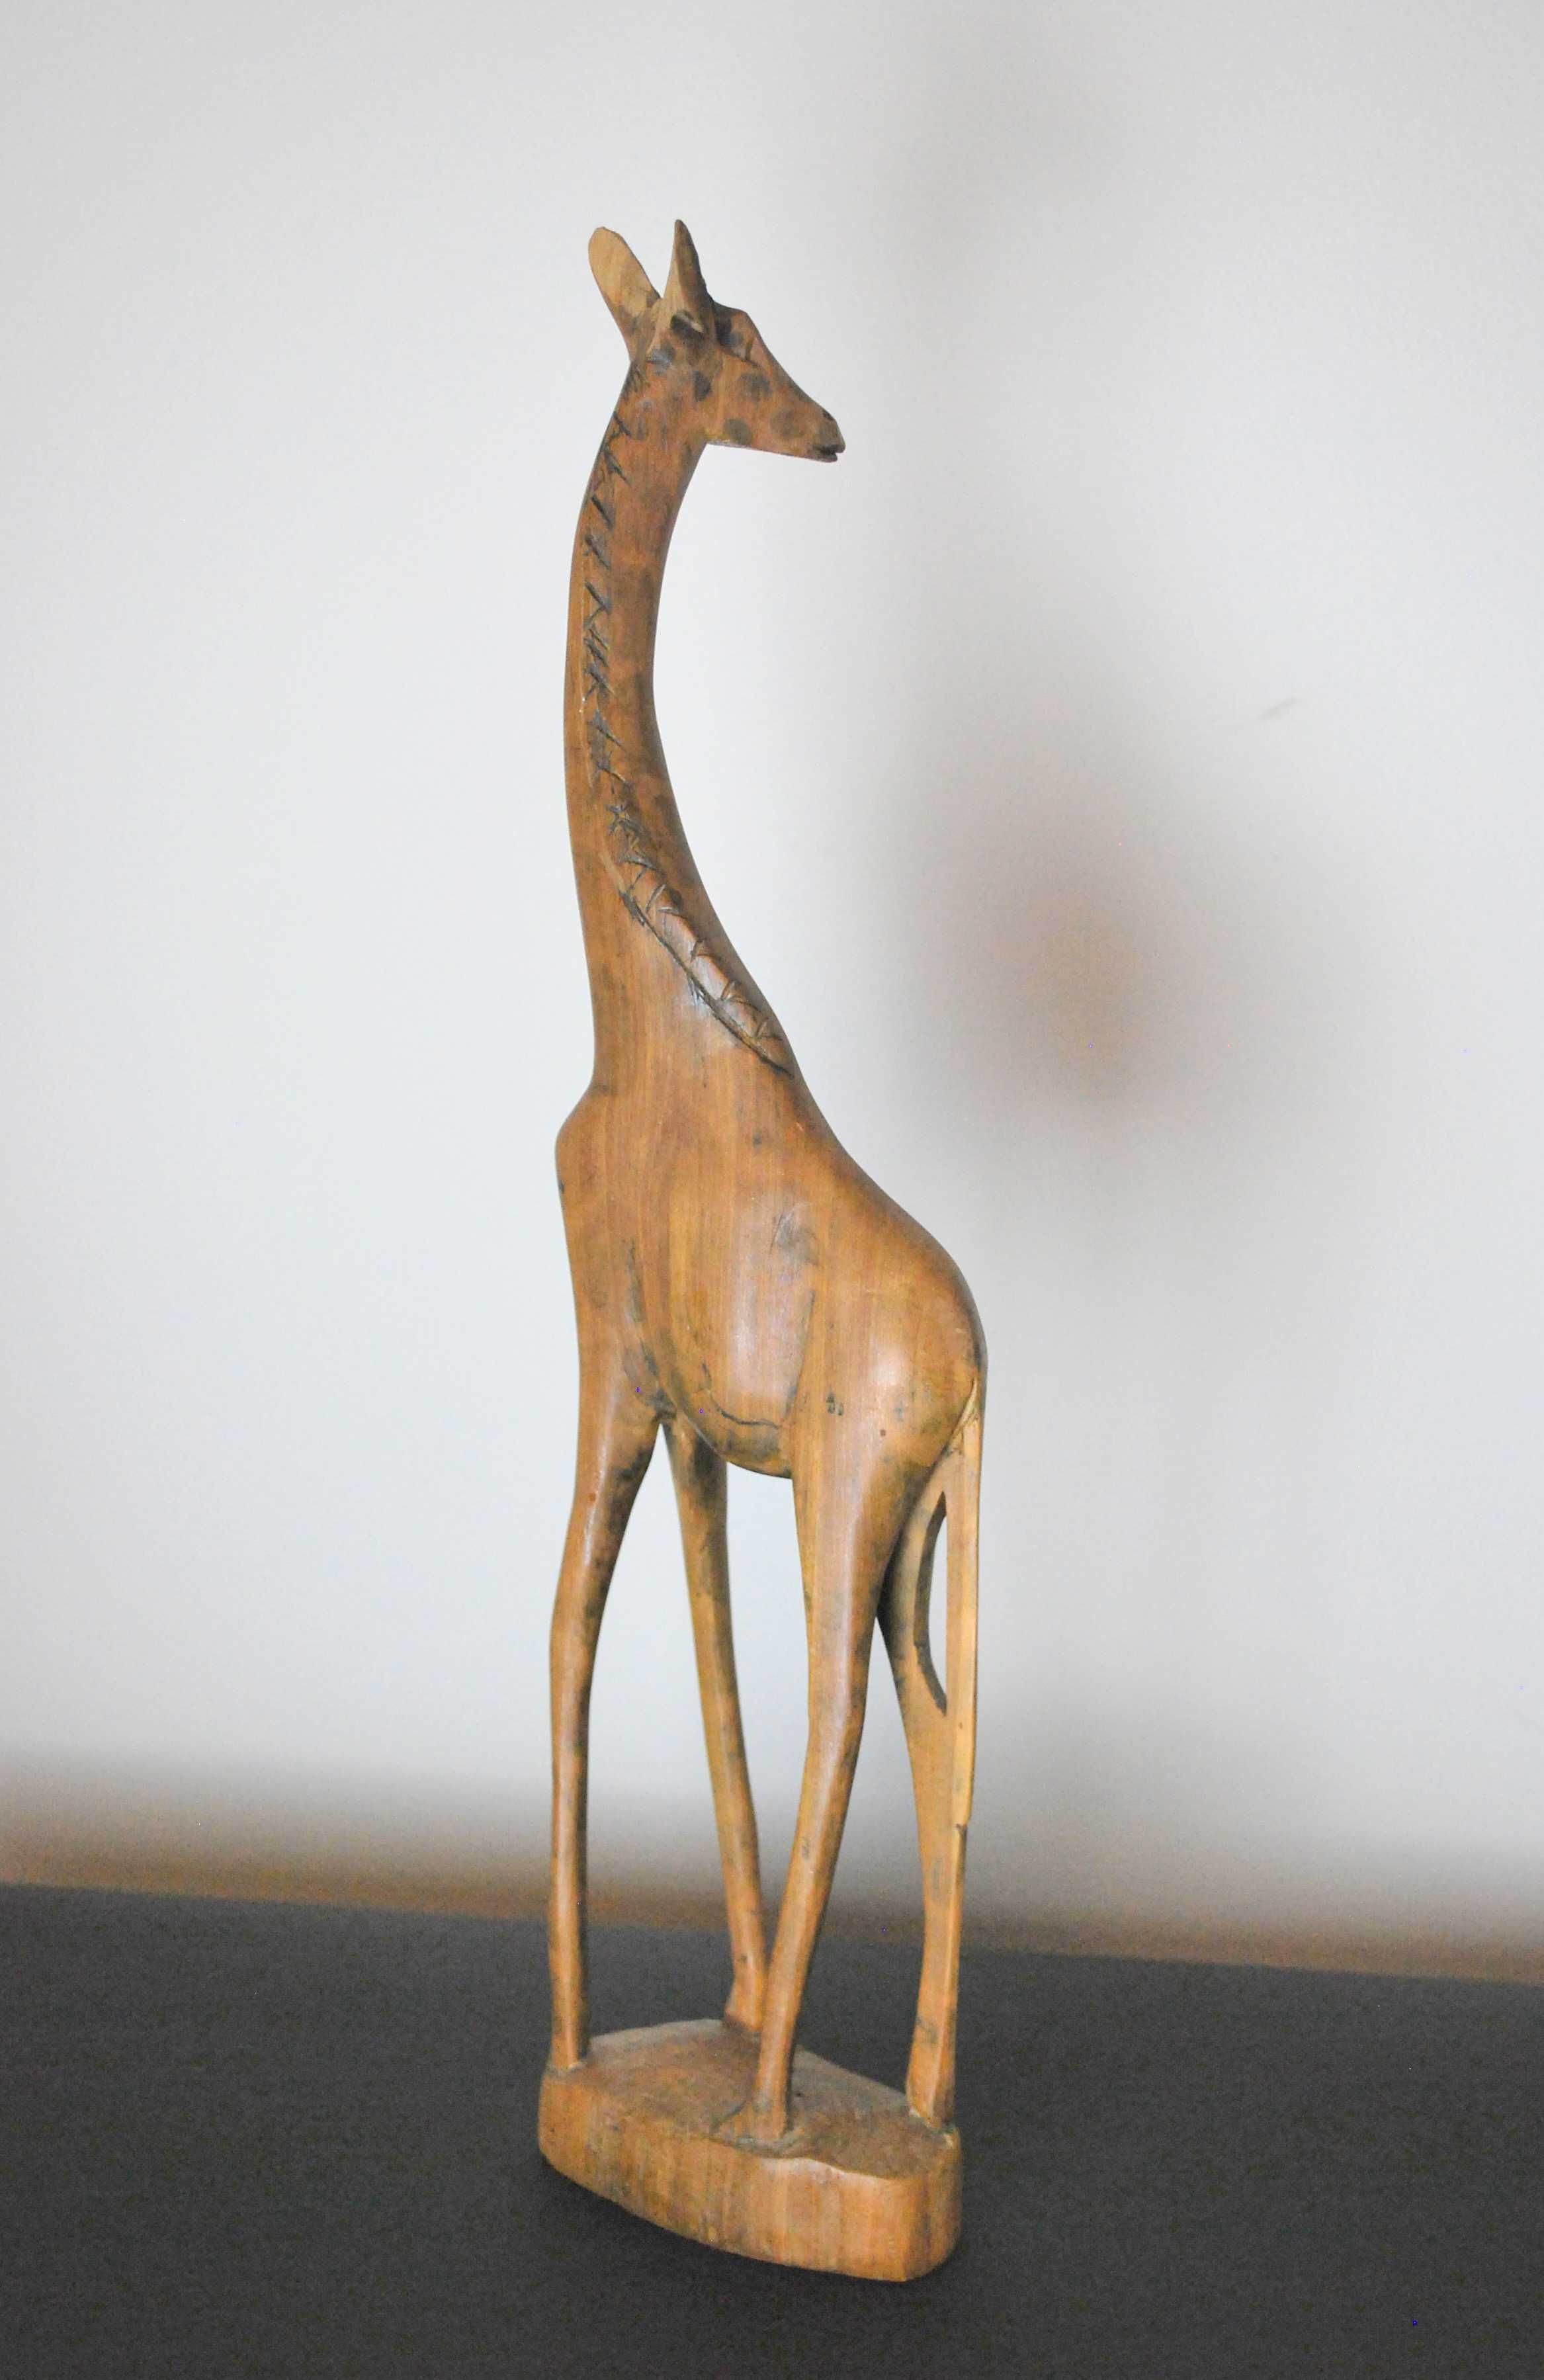 Rzeźba żyrafa Afryka  hand made drewno retro